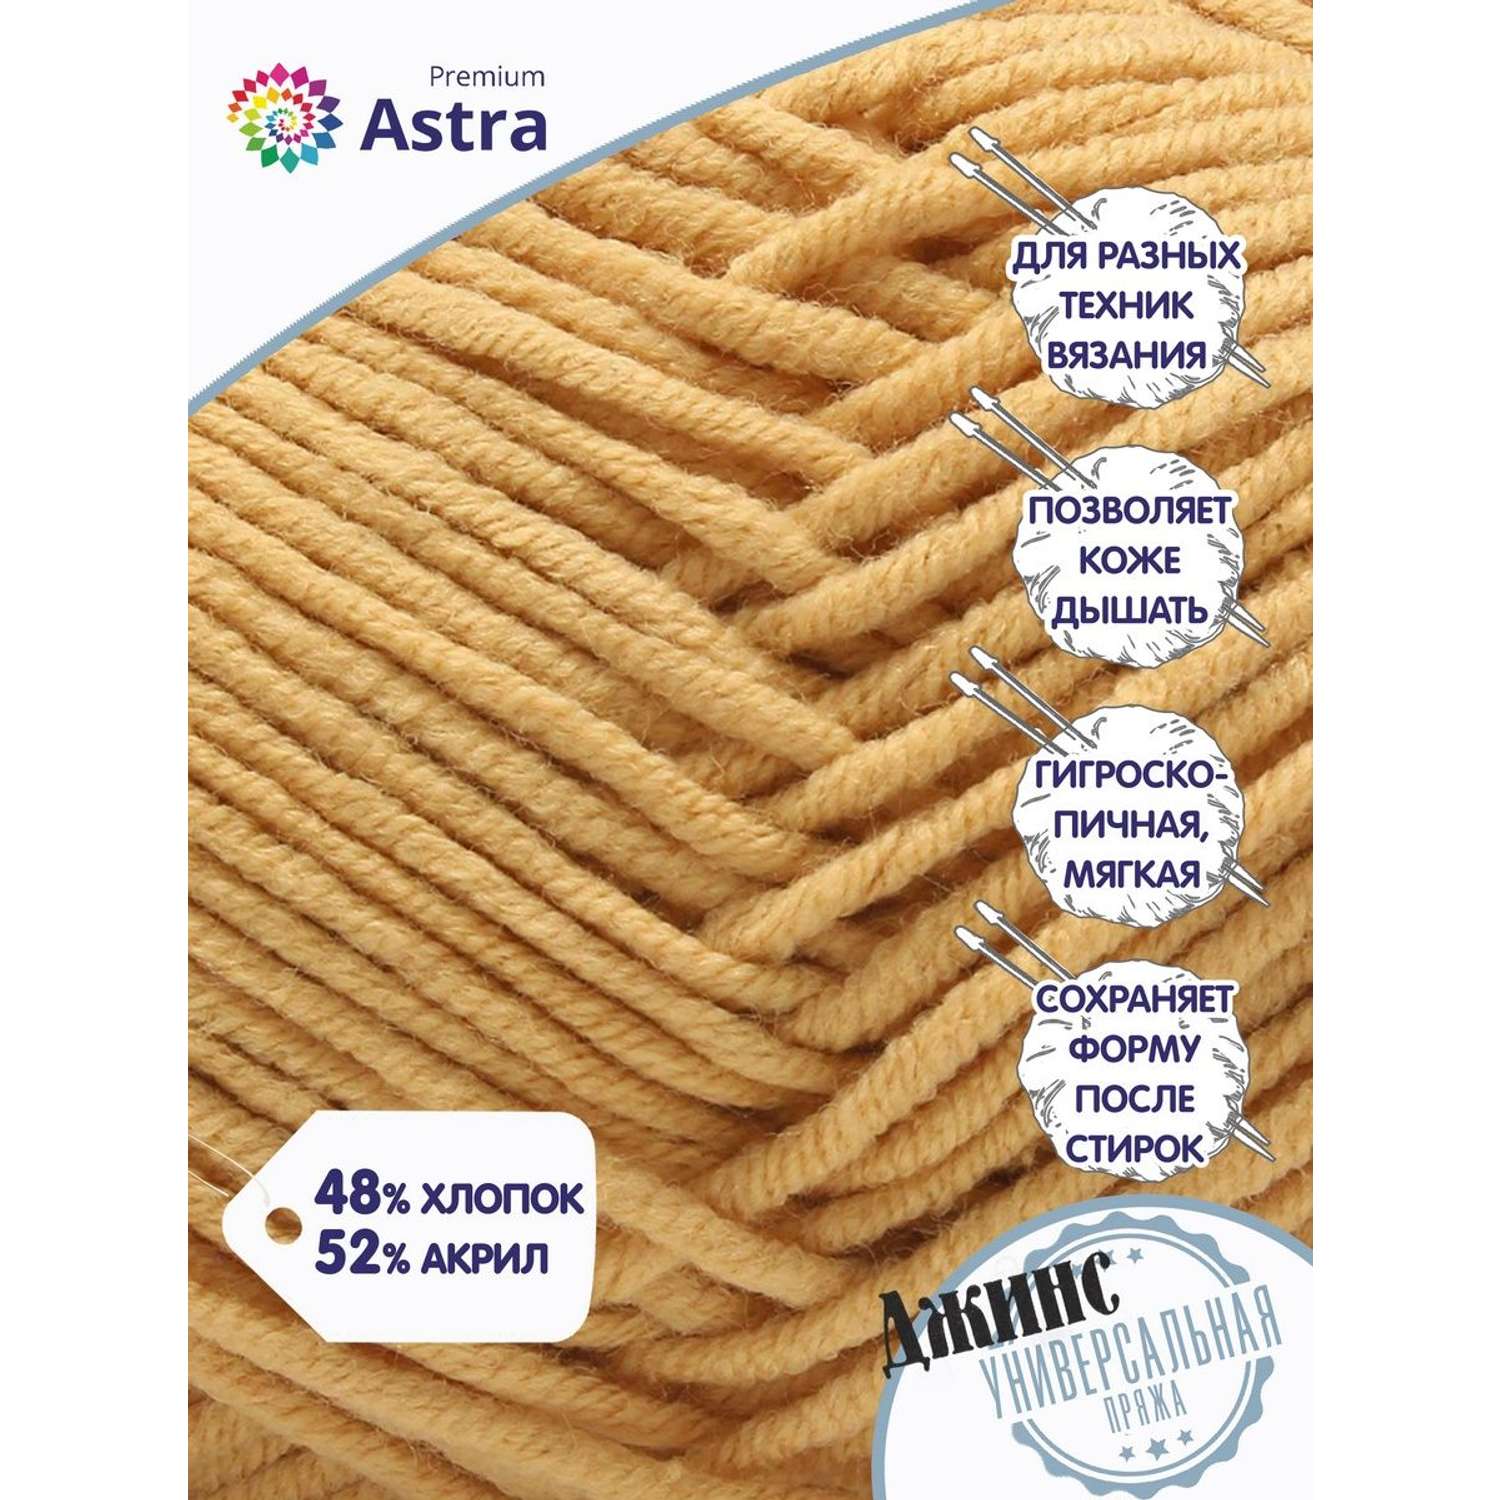 Пряжа для вязания Astra Premium джинс для повседневной одежды акрил хлопок 50 гр 135 м 810 бежевый 4 мотка - фото 3